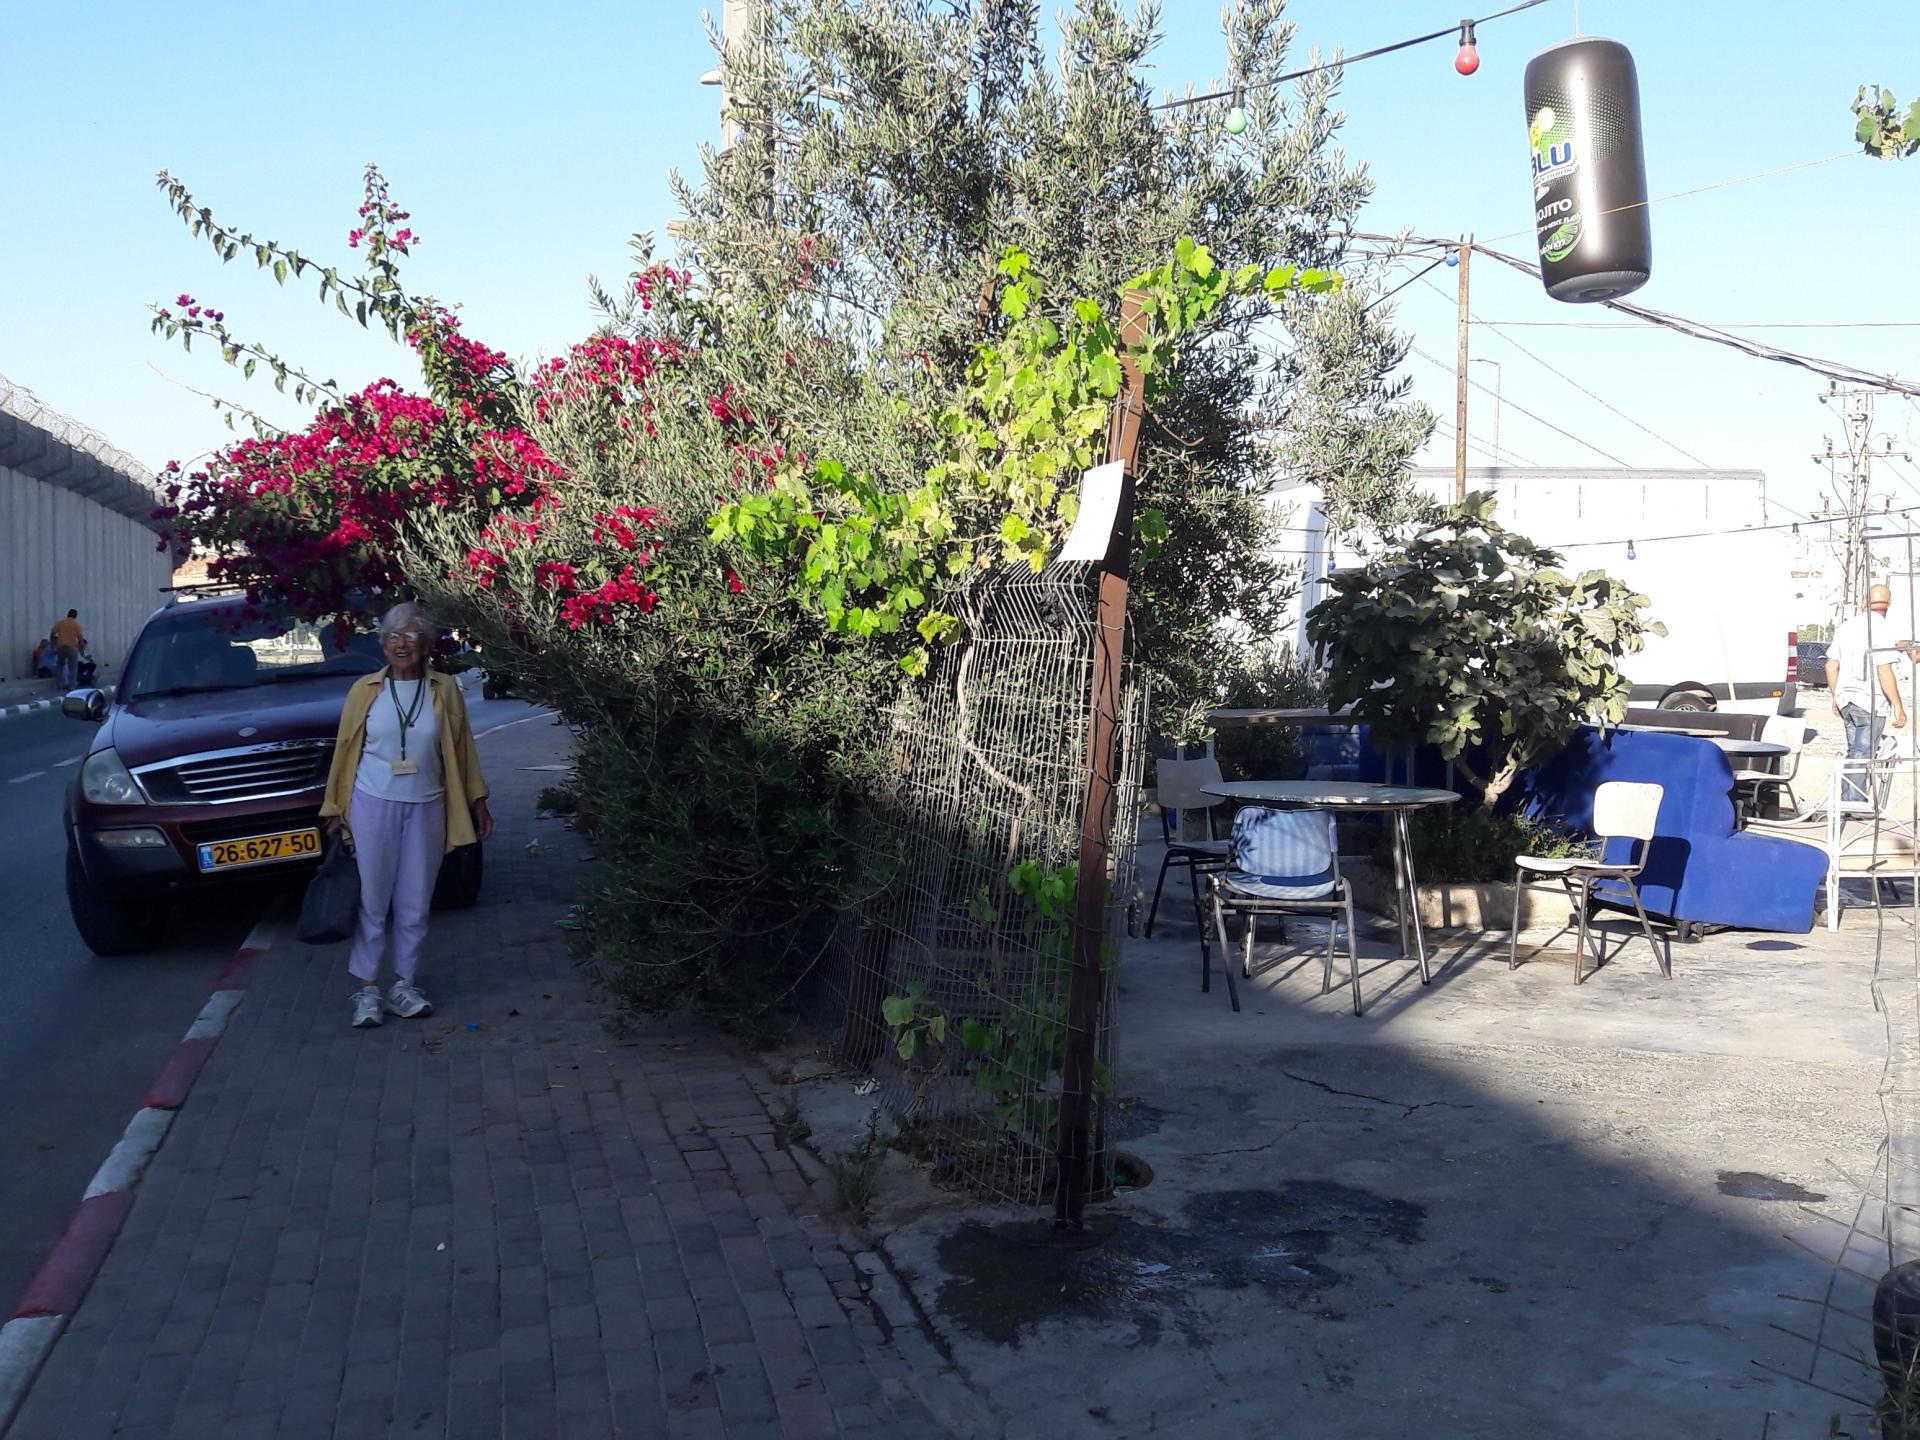 חנה תחת הביגונביליה, מימין חצר בית הקפה ומשמאל מעבר לכביש חומת הפרדה